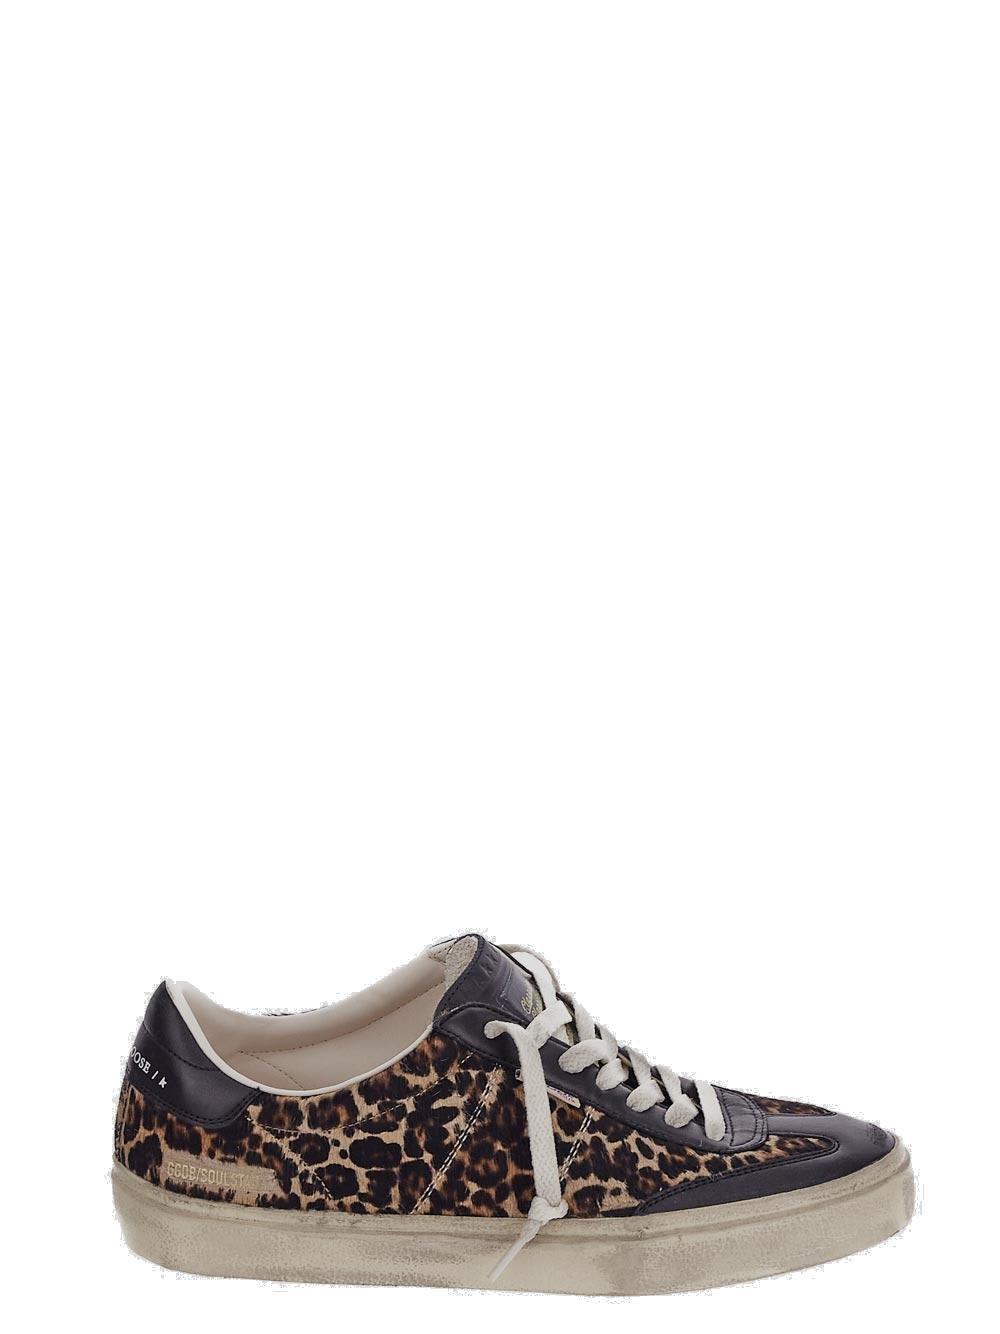 Soul Star Leopard Printed Sneakers